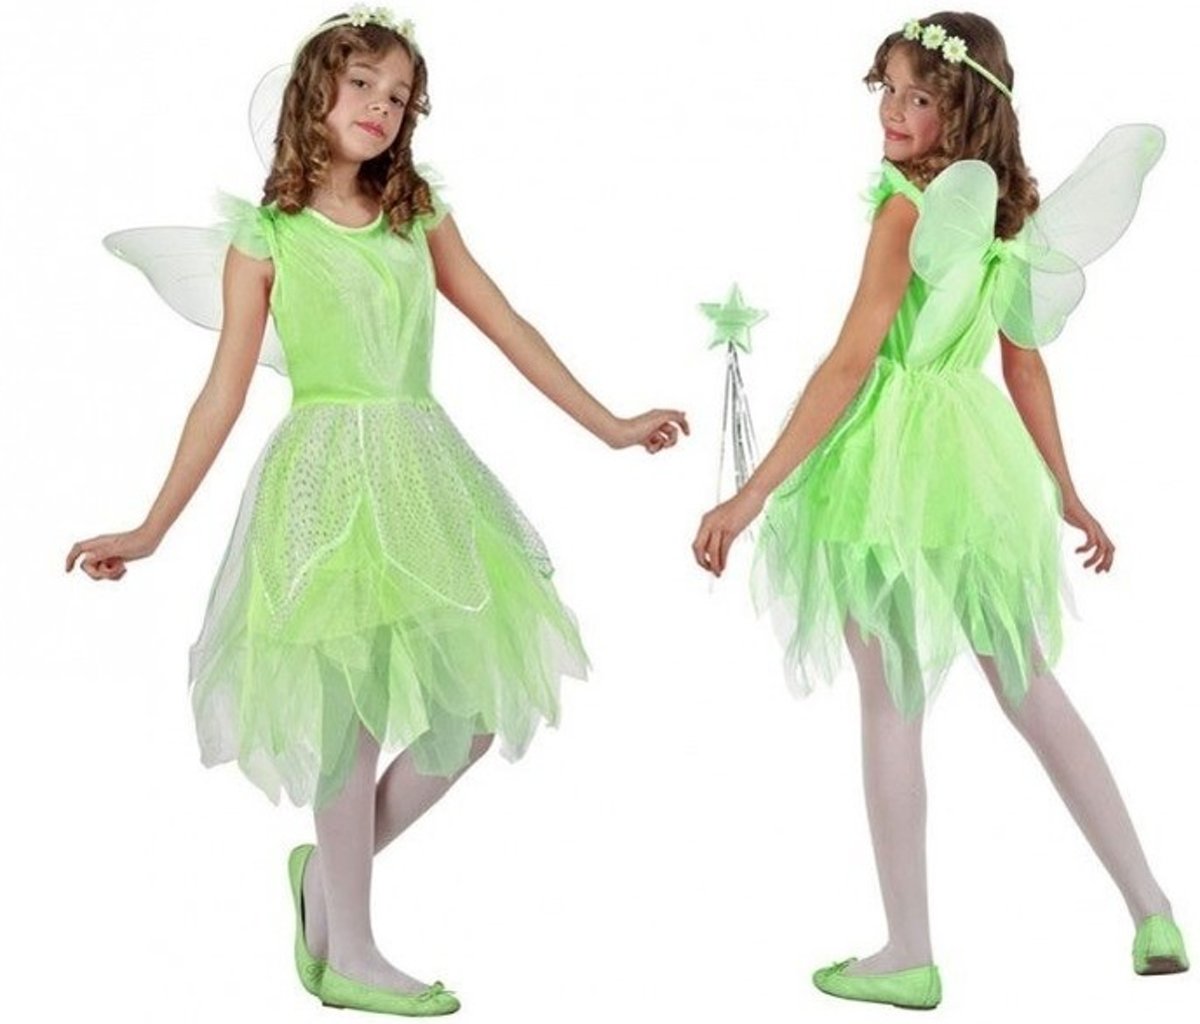 Groene toverfee/elf verkleedset voor meisjes - carnavalskleding - voordelig geprijsd 128 (7-9 jaar)